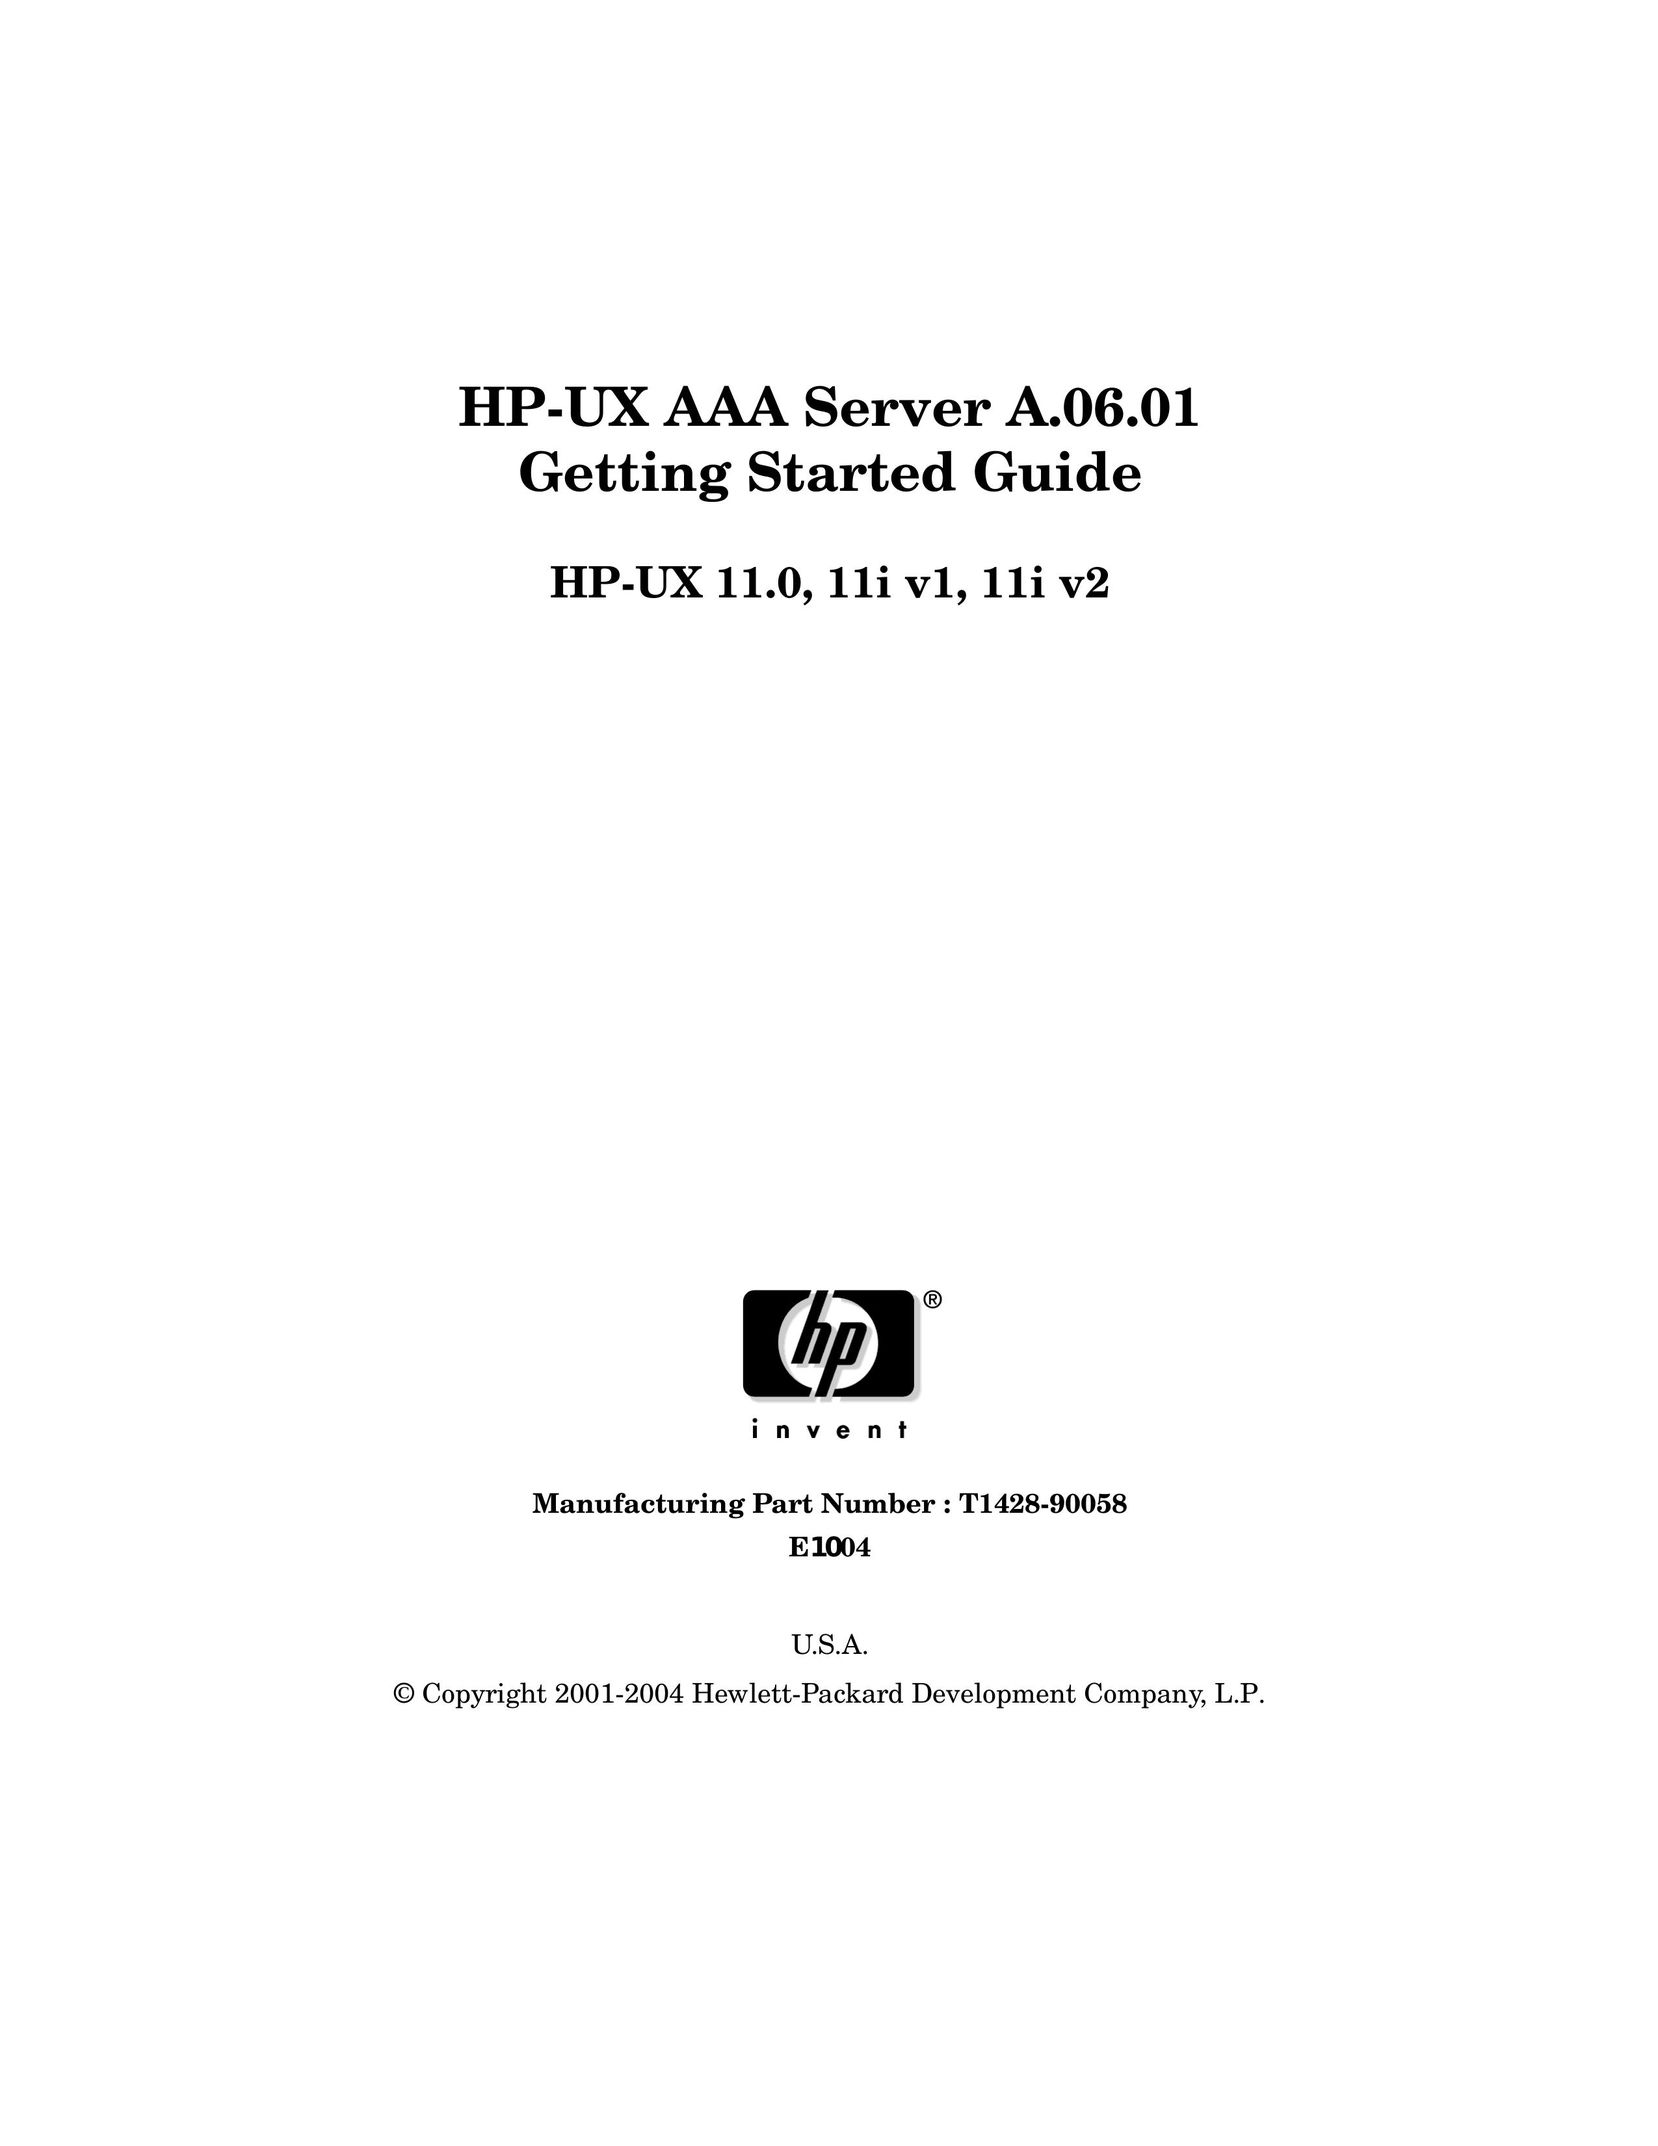 HP (Hewlett-Packard) 11I V2 Server User Manual